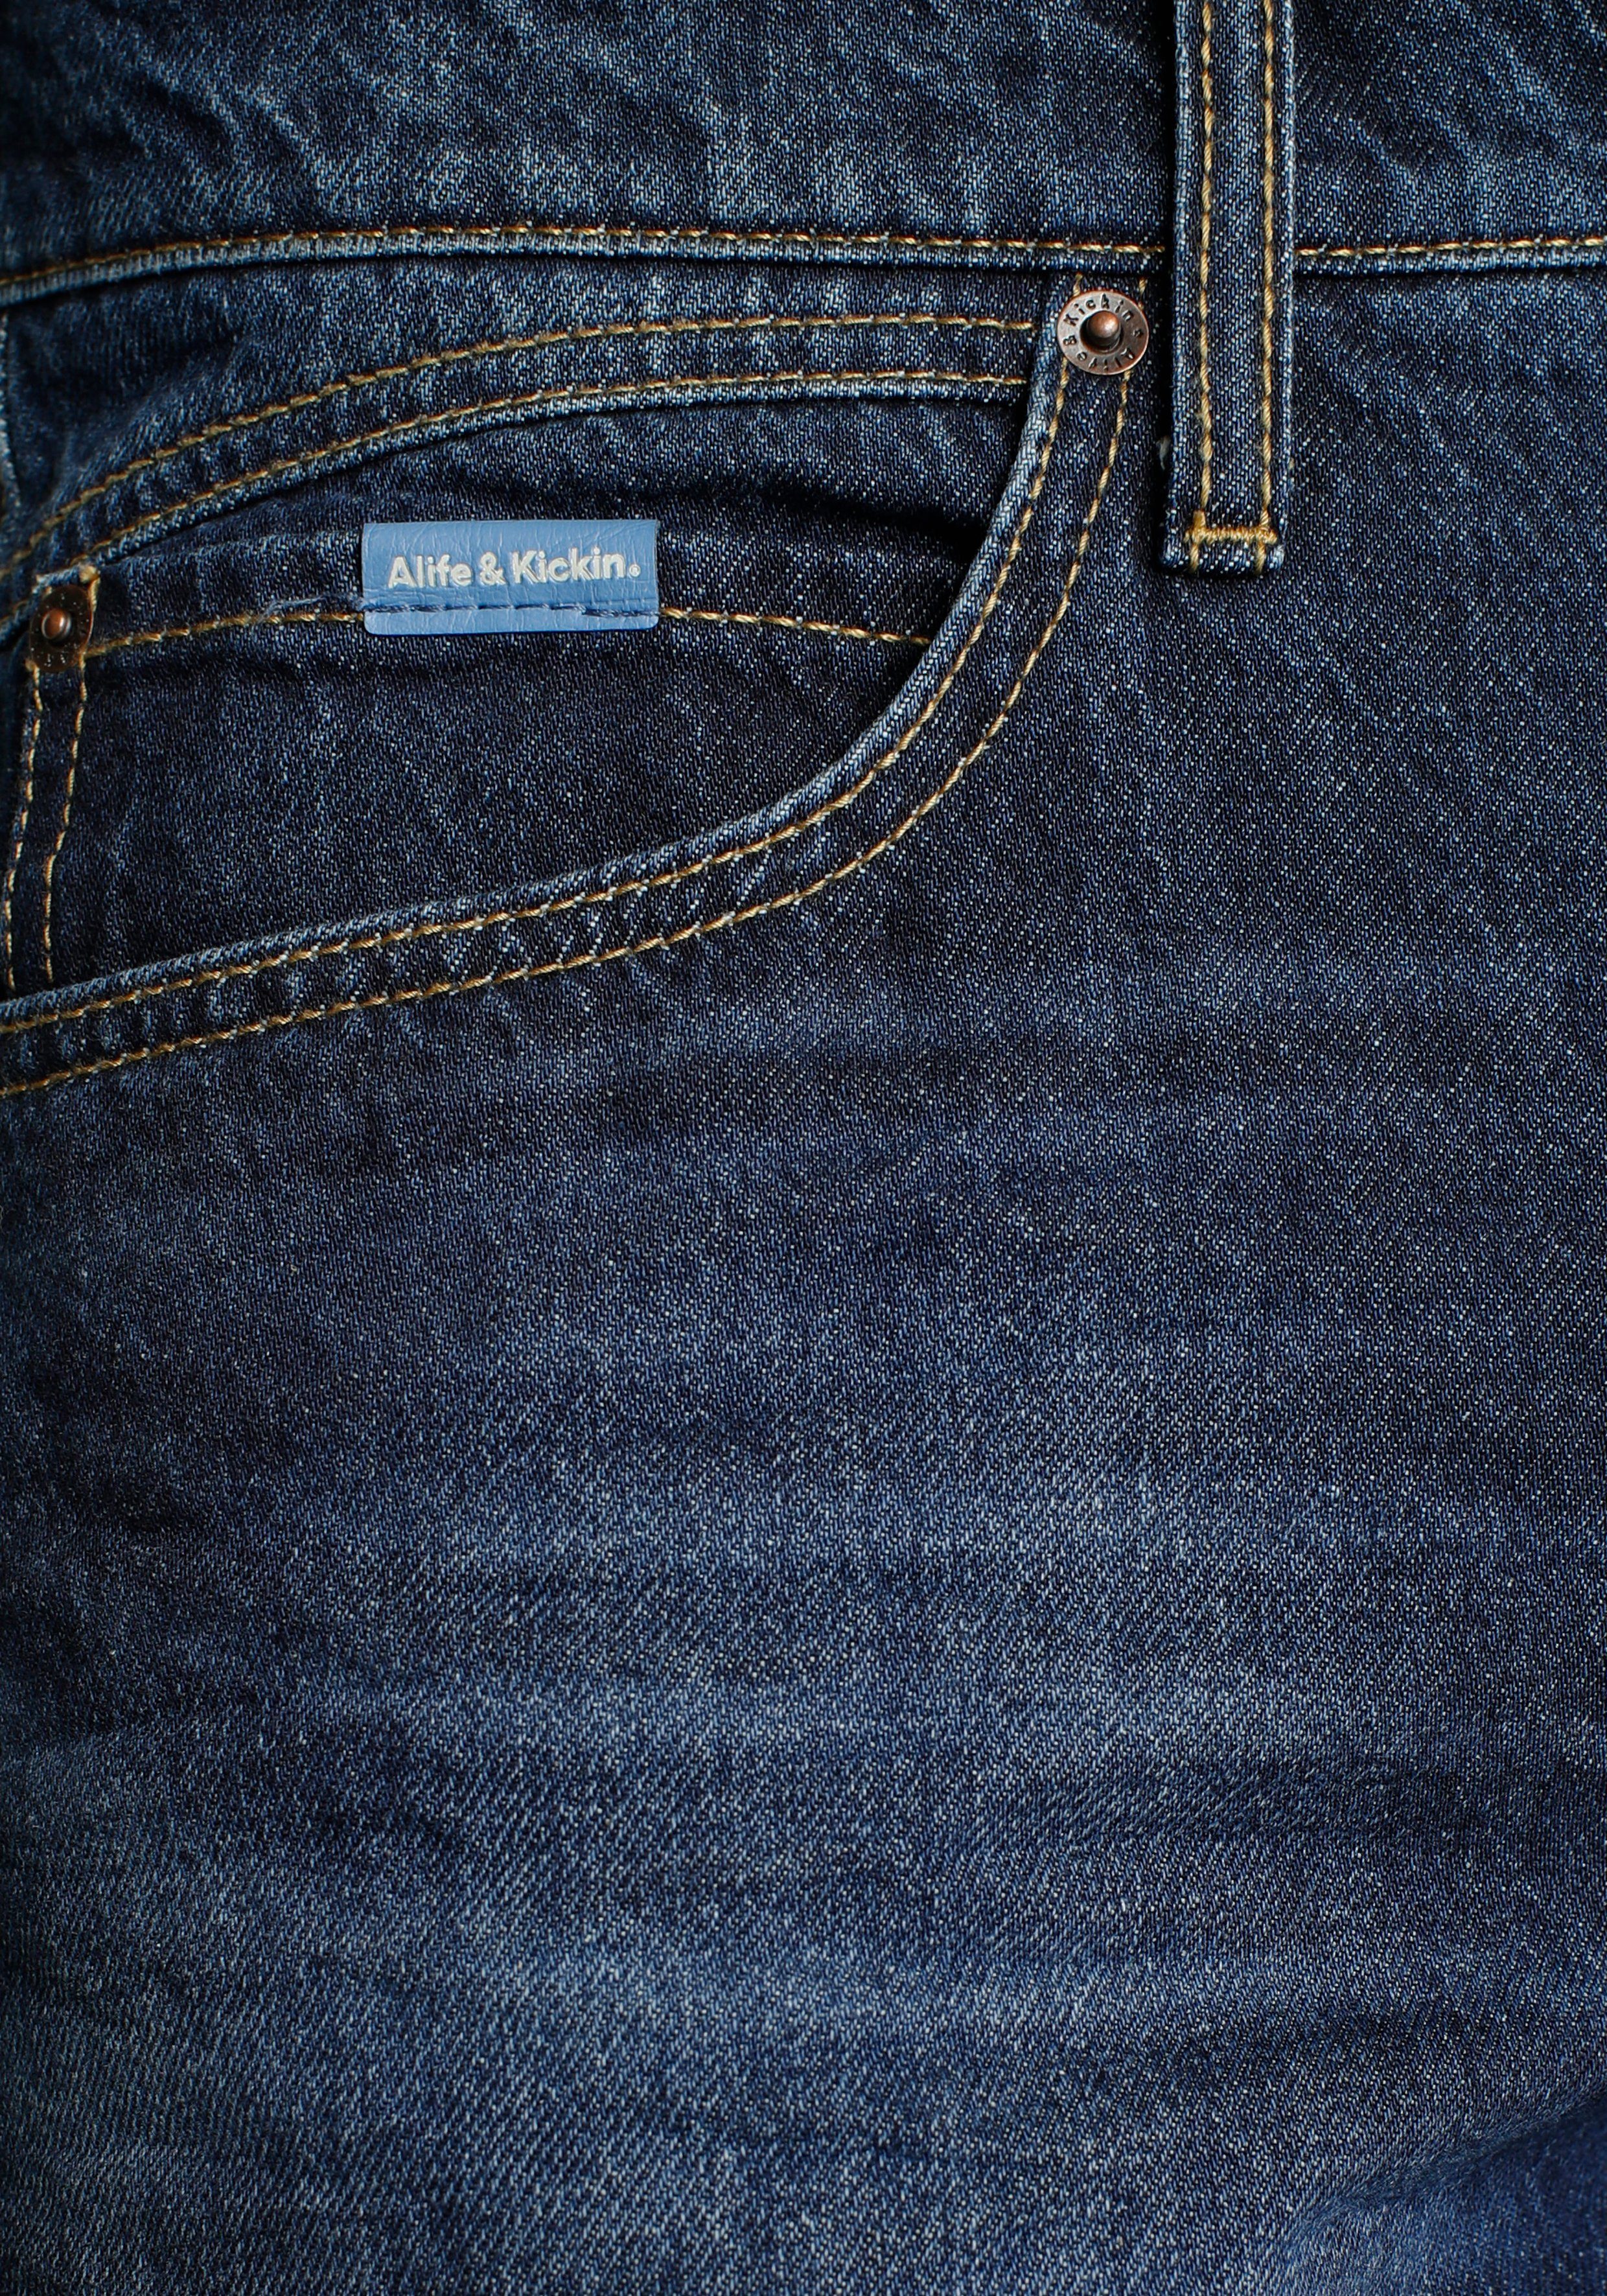 wassersparende Wash Loose-fit-Jeans durch Ozon & Produktion Kickin Ökologische, blue dark AlecAK Alife